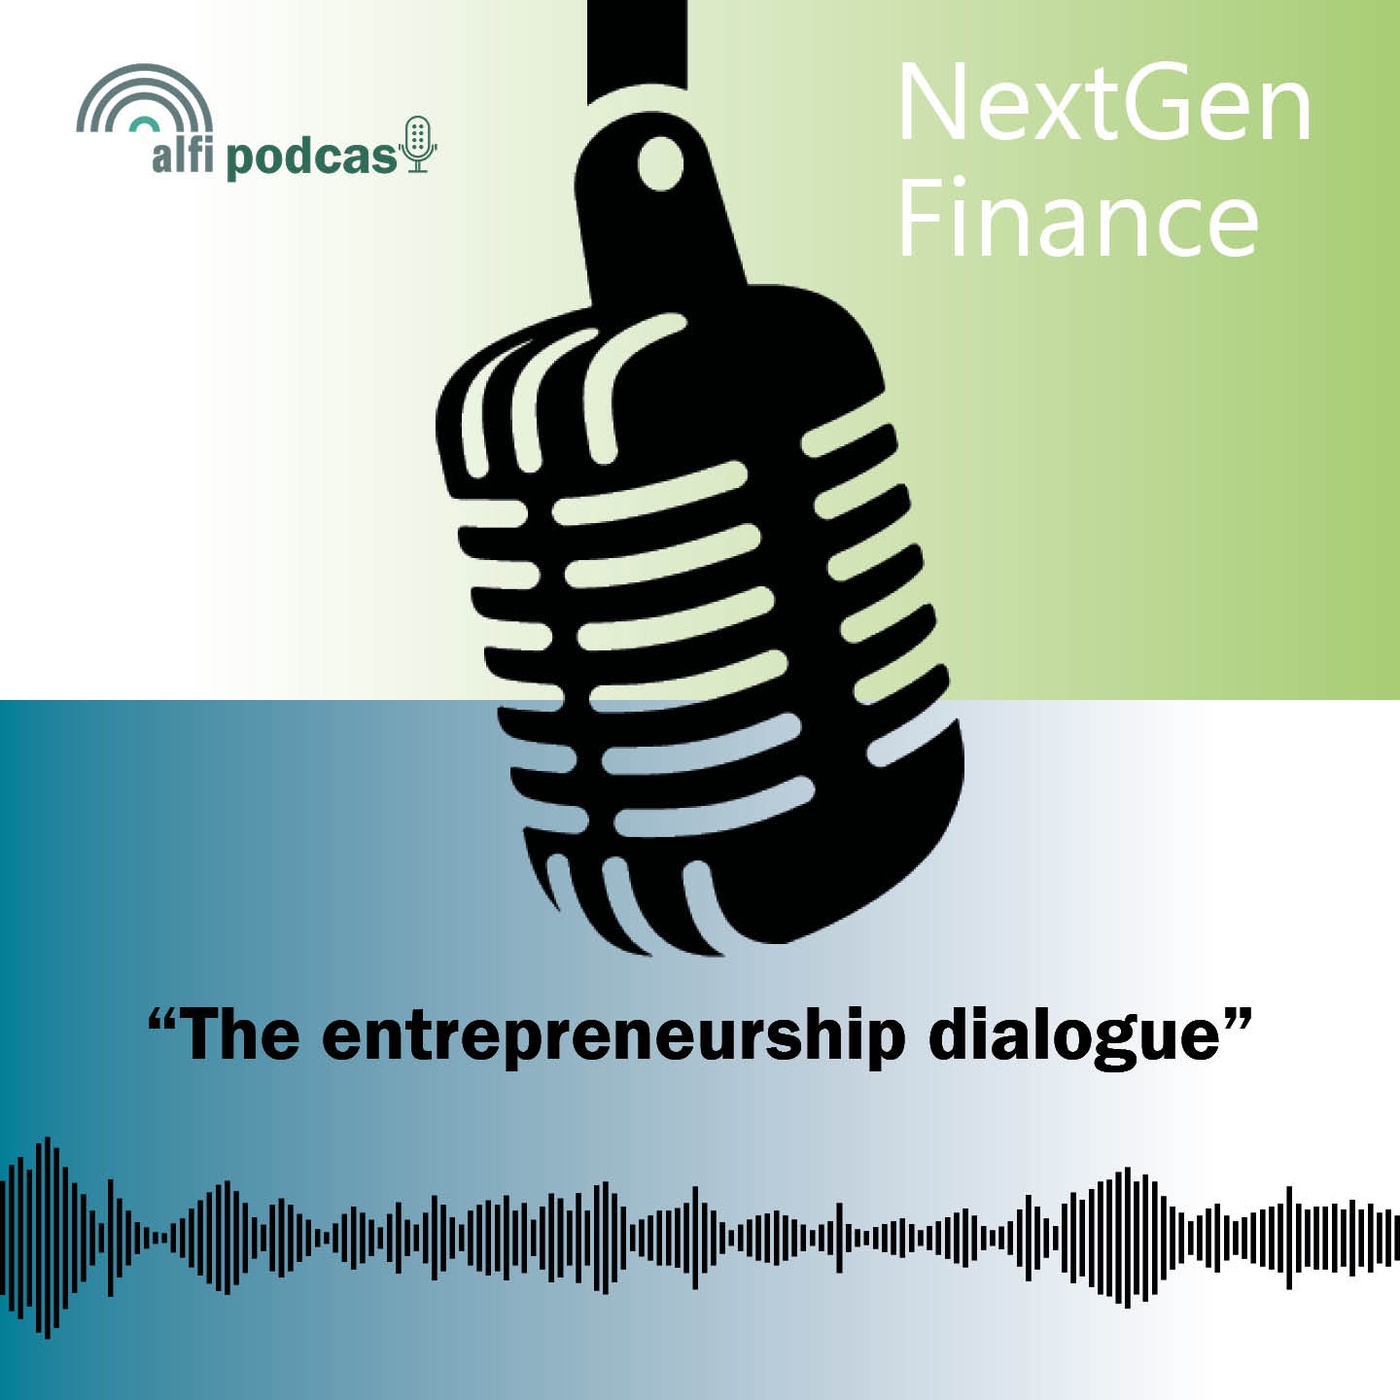 The entrepreneurship dialogue